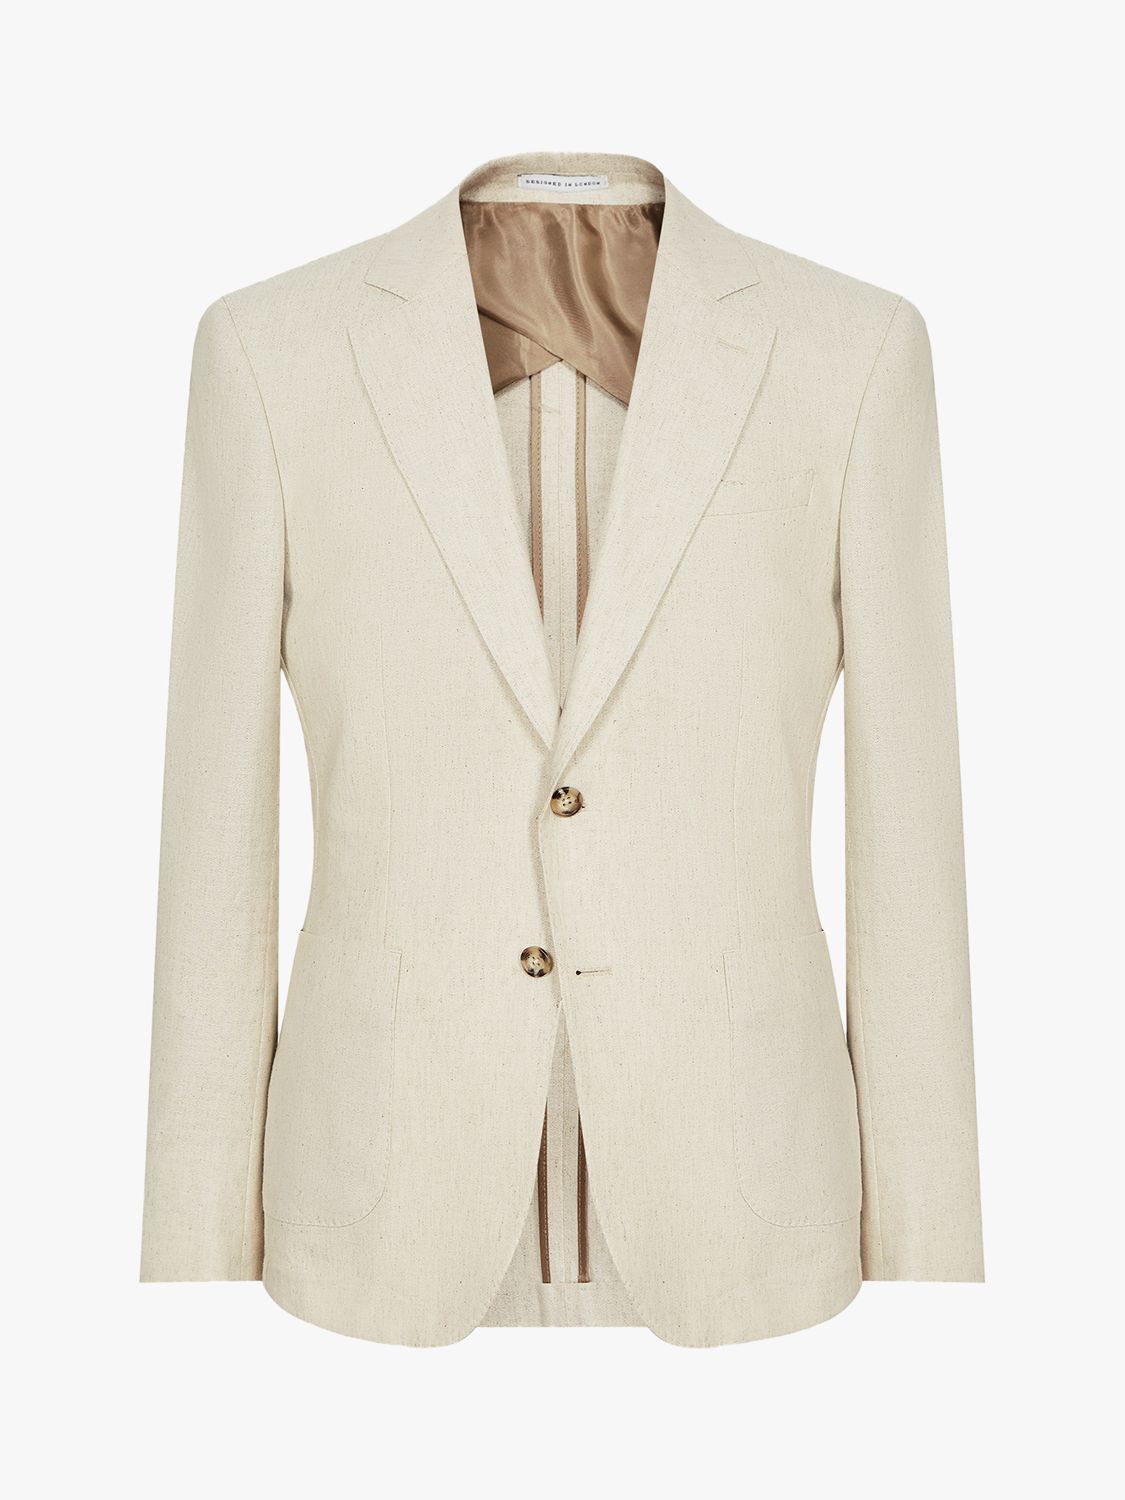 Reiss Rack Cotton Linen Crepe Suit Jacket, Stone